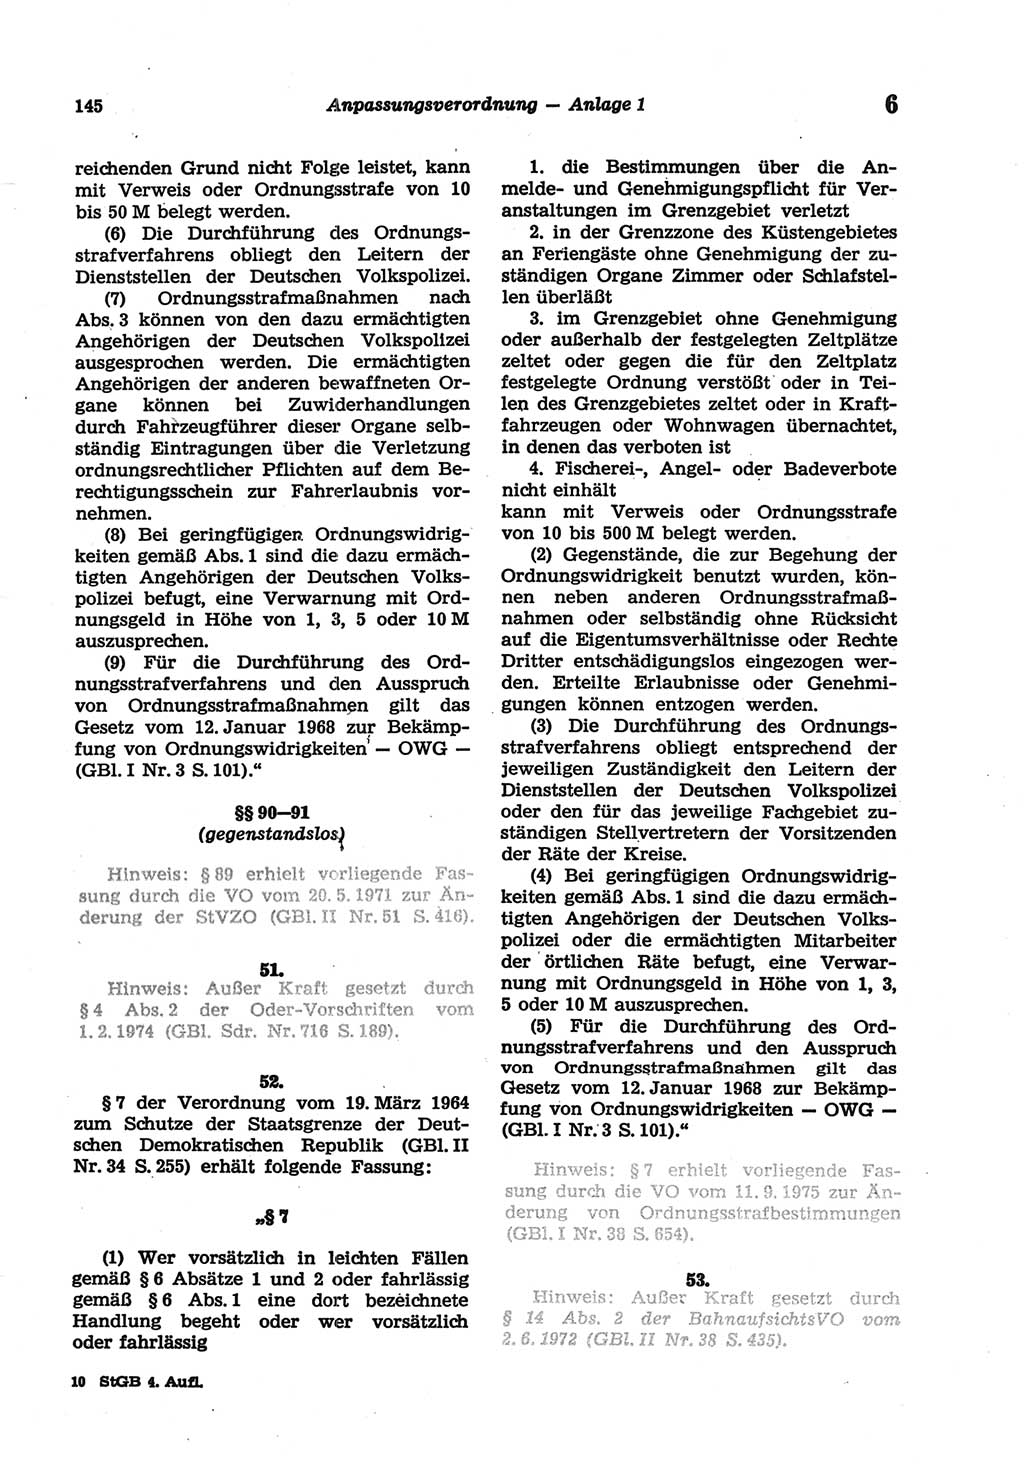 Strafgesetzbuch (StGB) der Deutschen Demokratischen Republik (DDR) und angrenzende Gesetze und Bestimmungen 1977, Seite 145 (StGB DDR Ges. Best. 1977, S. 145)